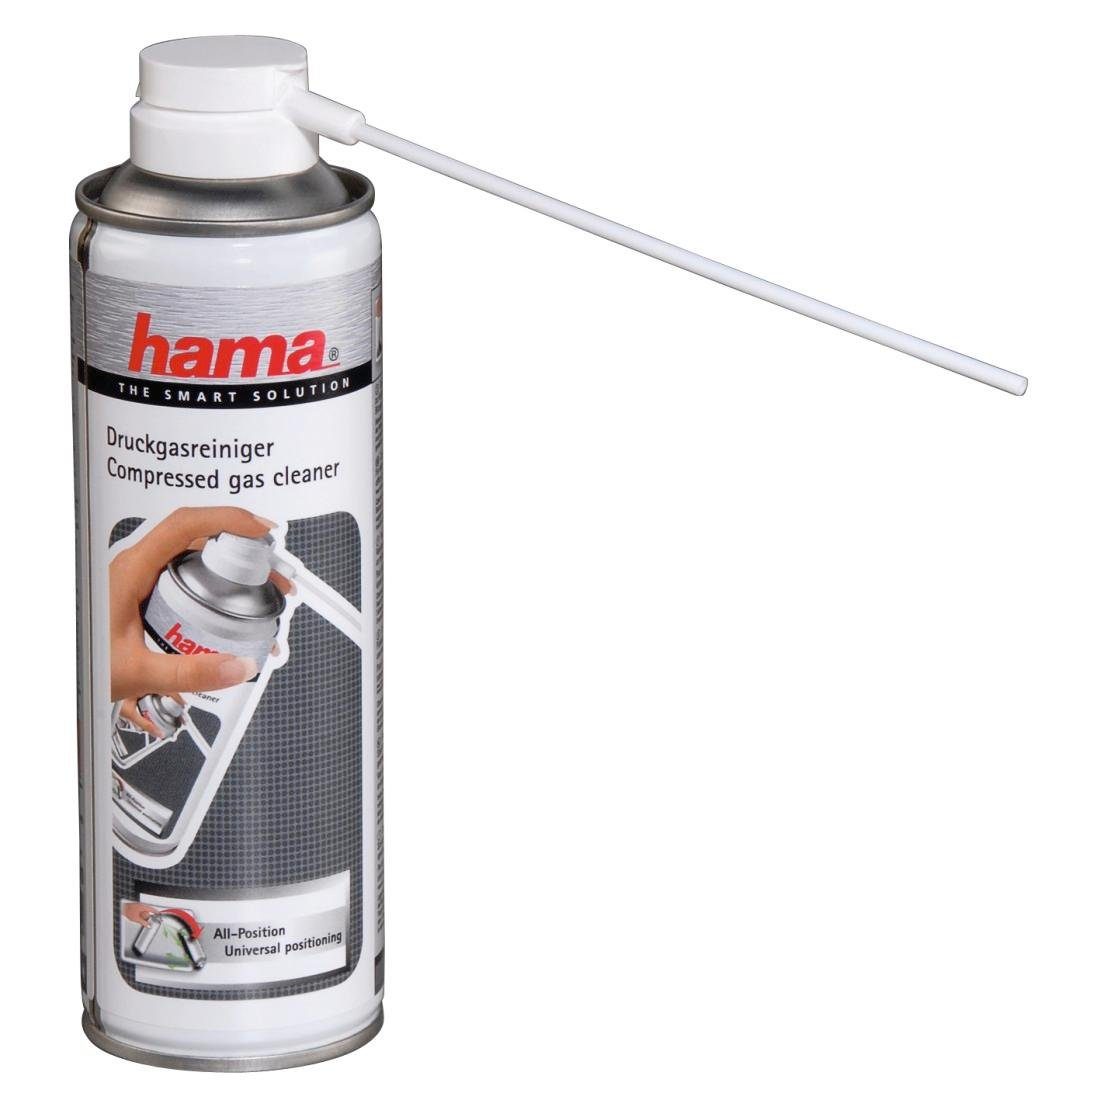 Hama Reinigungs-Set Druckgasreiniger "All Position", 125 ml Reiniger & Pflegeprodukte | Reinigungs-Sets